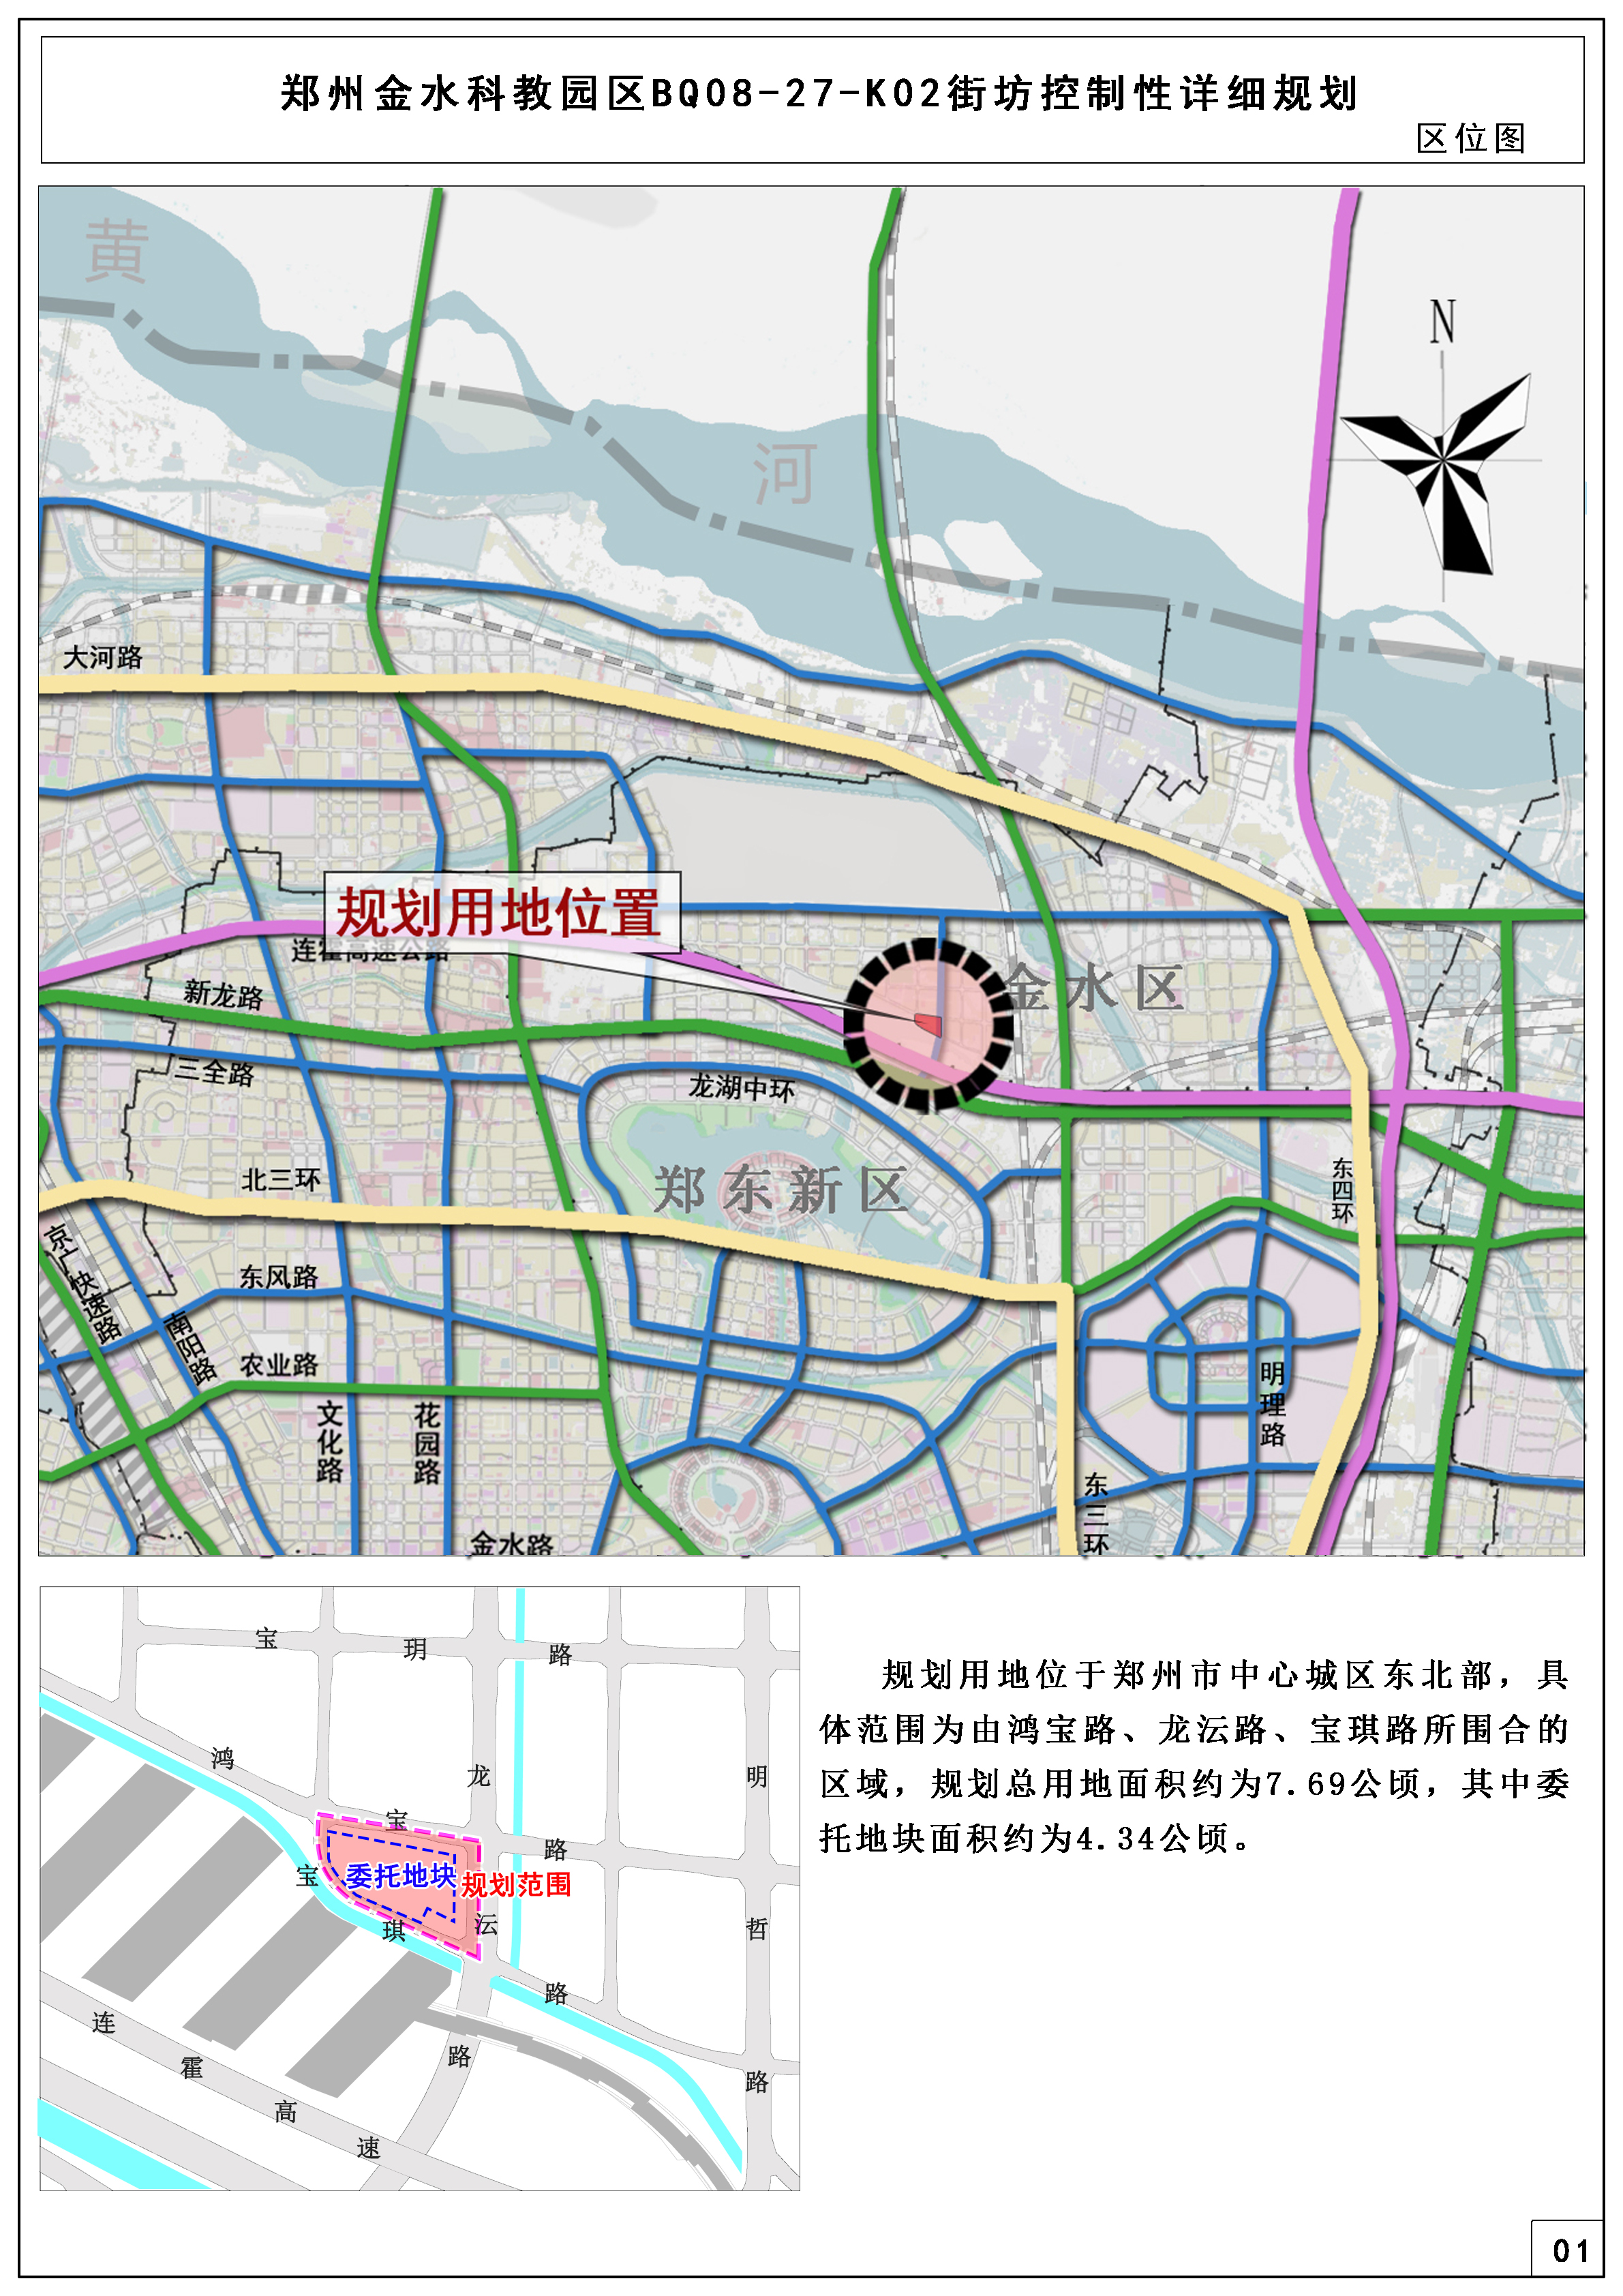 郑州金水科教园区BQ08-27-K02街坊控制性详细规划